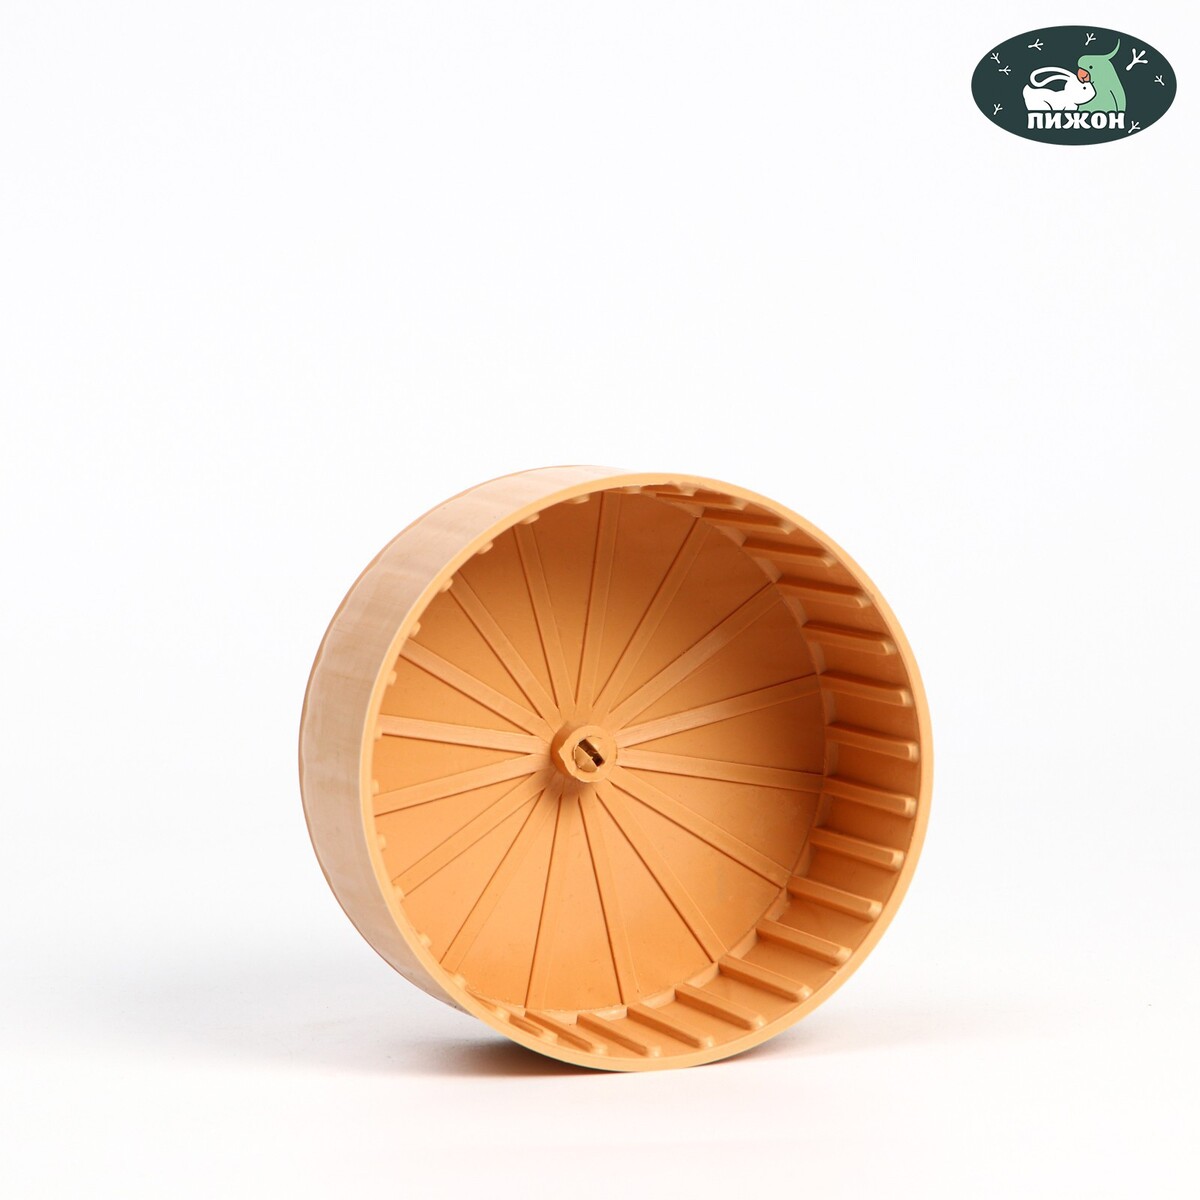 Колесо для грызунов полузакрытое пластиковое, без подставки, 14 см, бежевое колесо для грызунов тихое 11 см зеленое